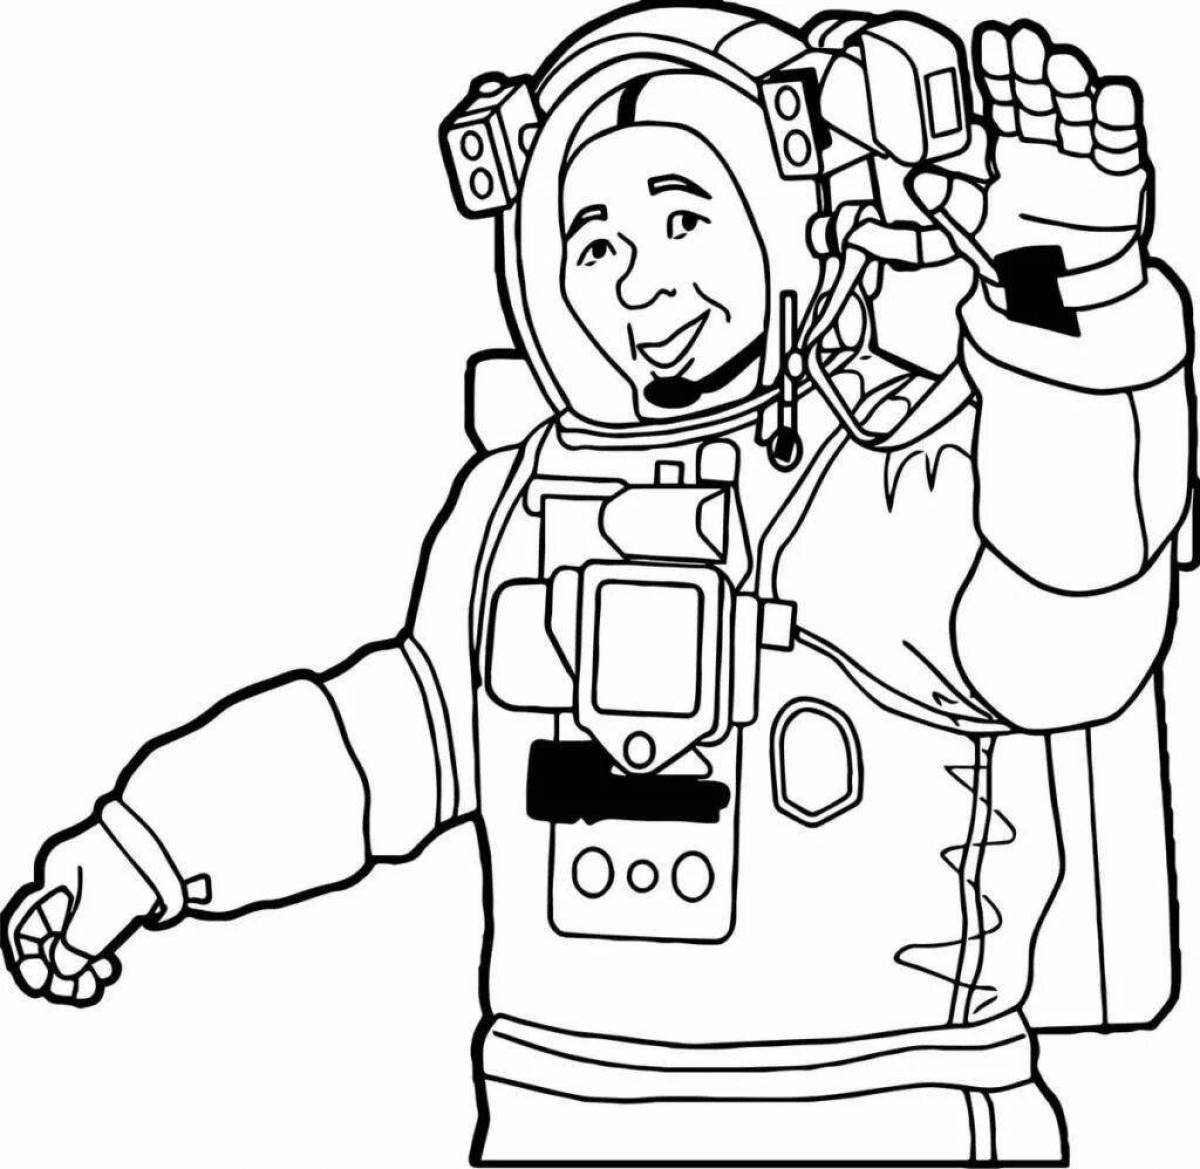 Genius astronaut in spacesuit